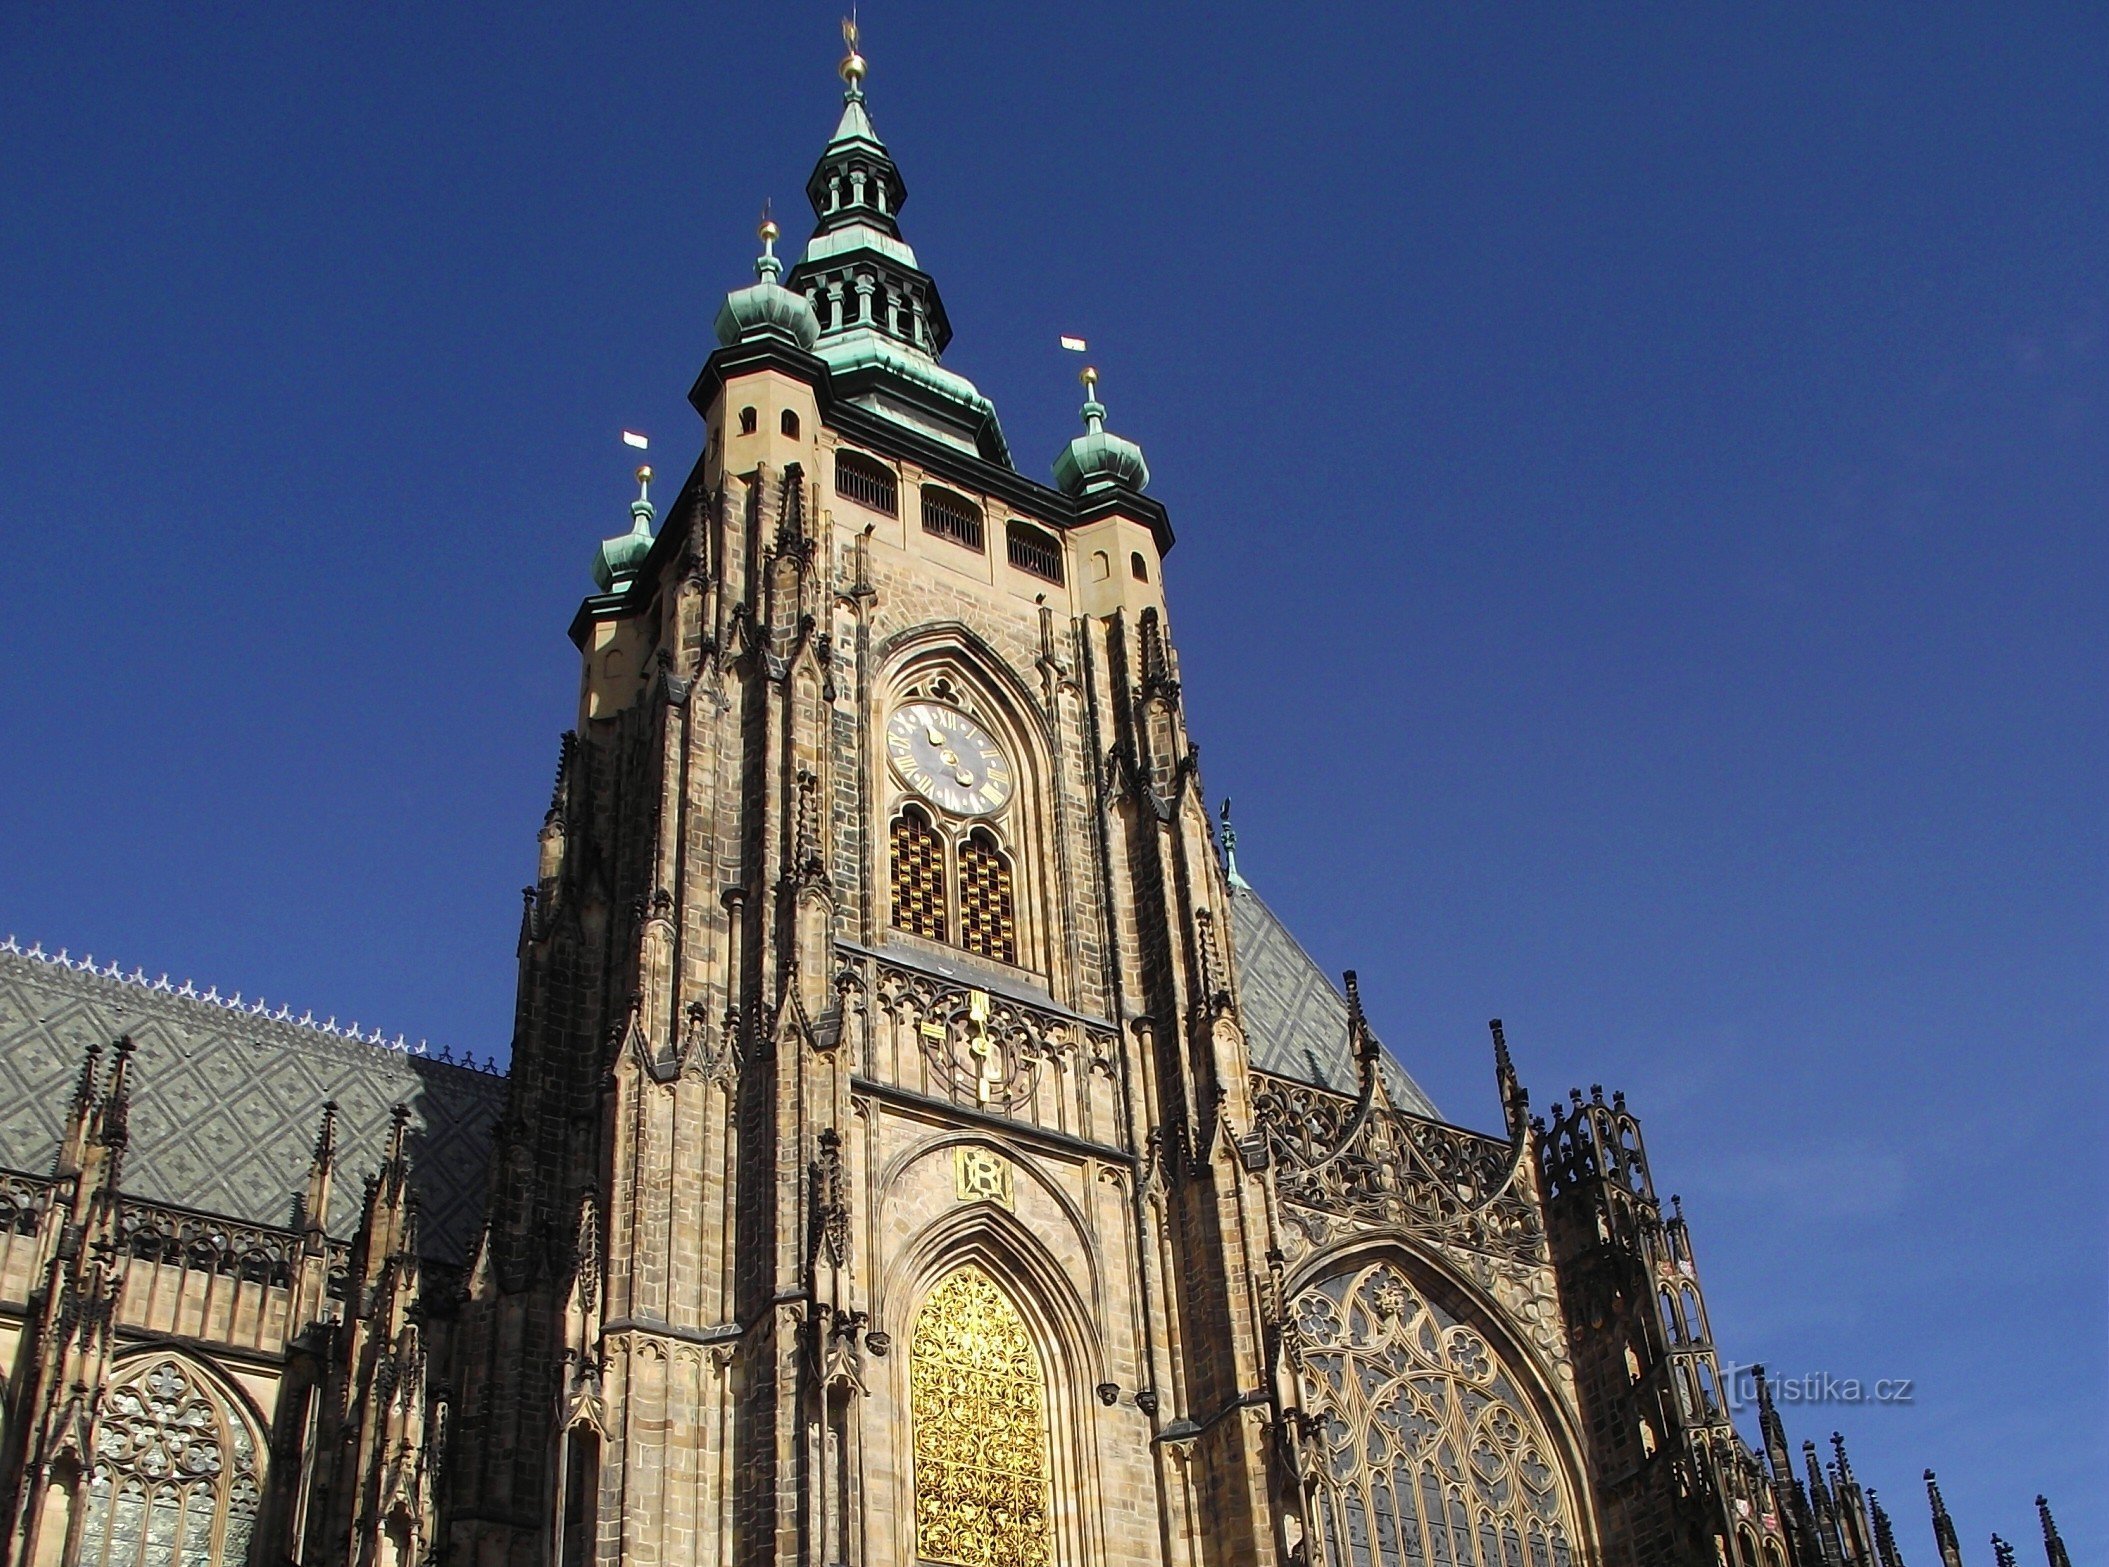 Praga - turnul clopotniță al catedralei Marele Turn de Sud (Castelul Praga)